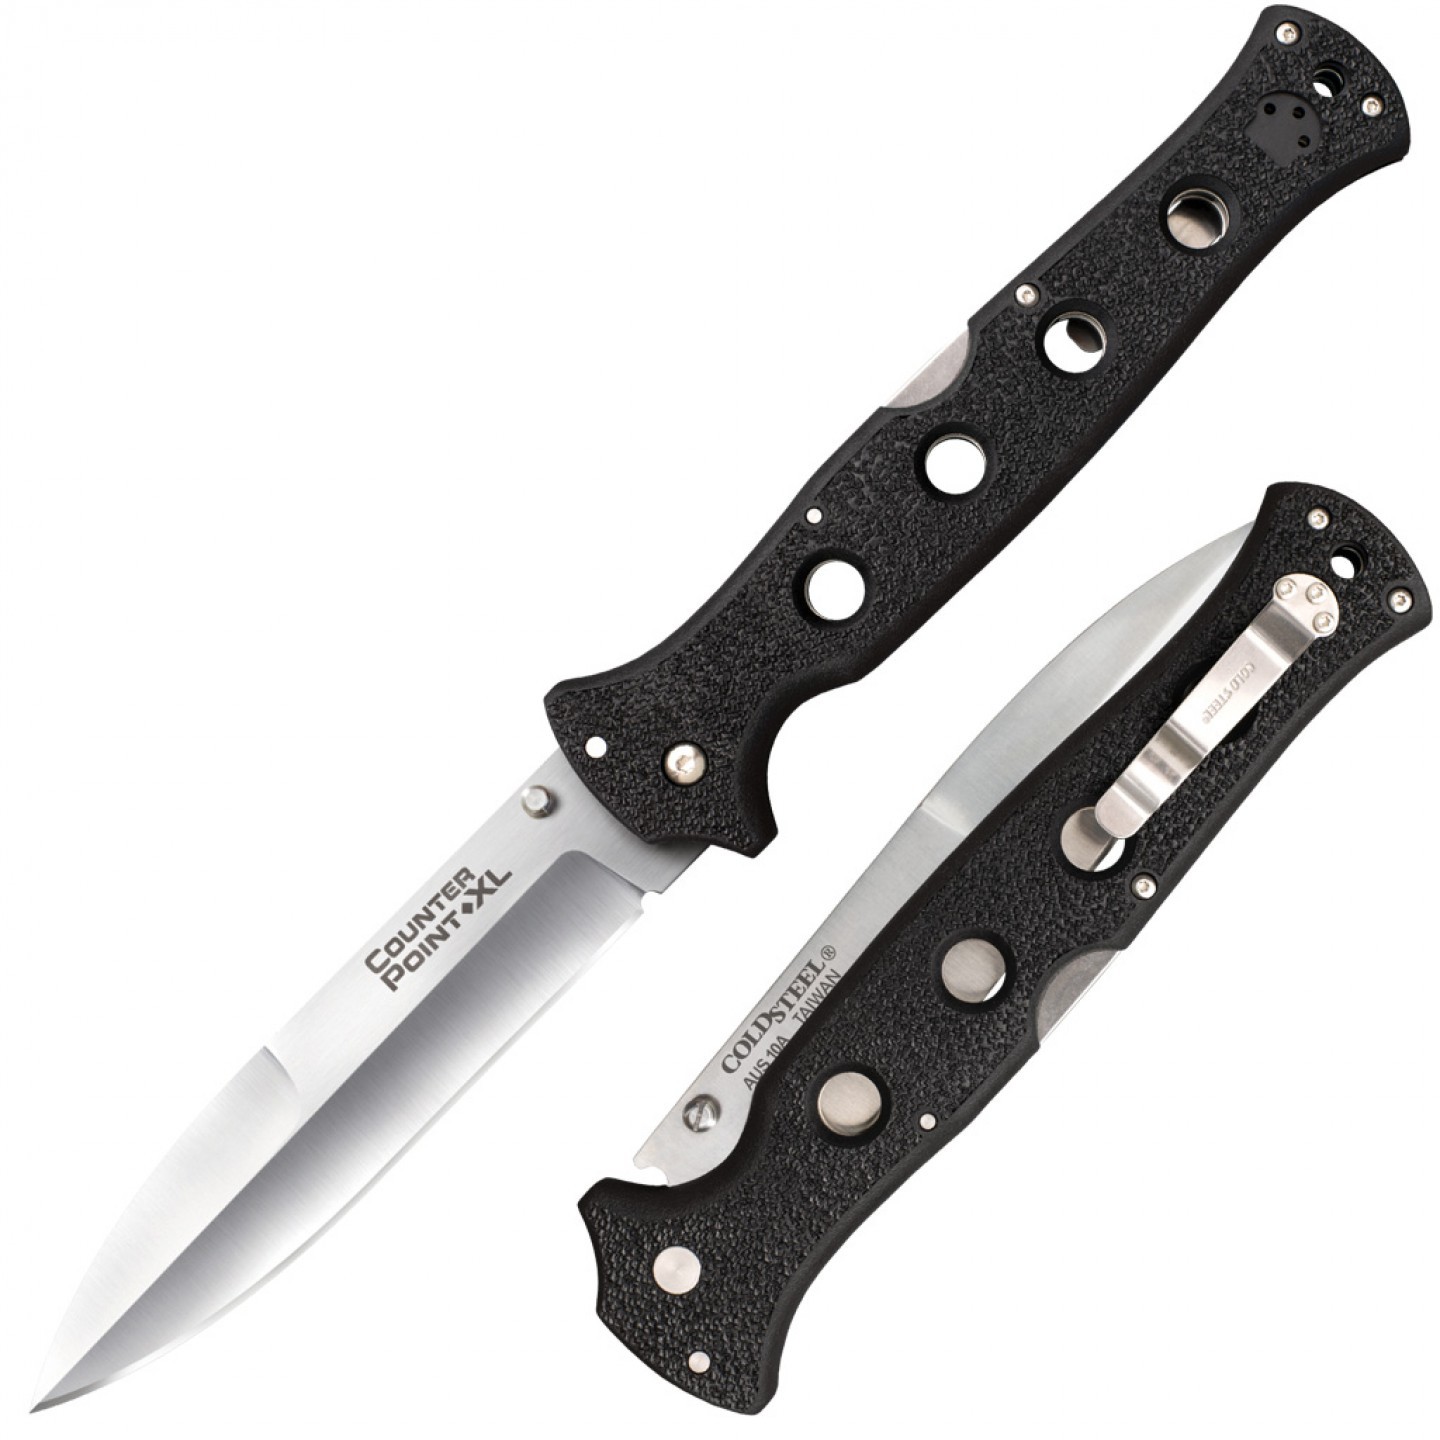 Нож складной Cold Steel Counter Point XL, сталь AUS-10A, рукоять grivory, black авторский нож ястреб сталь мозаичный дамаск рукоять венге вставка литье мельхиор